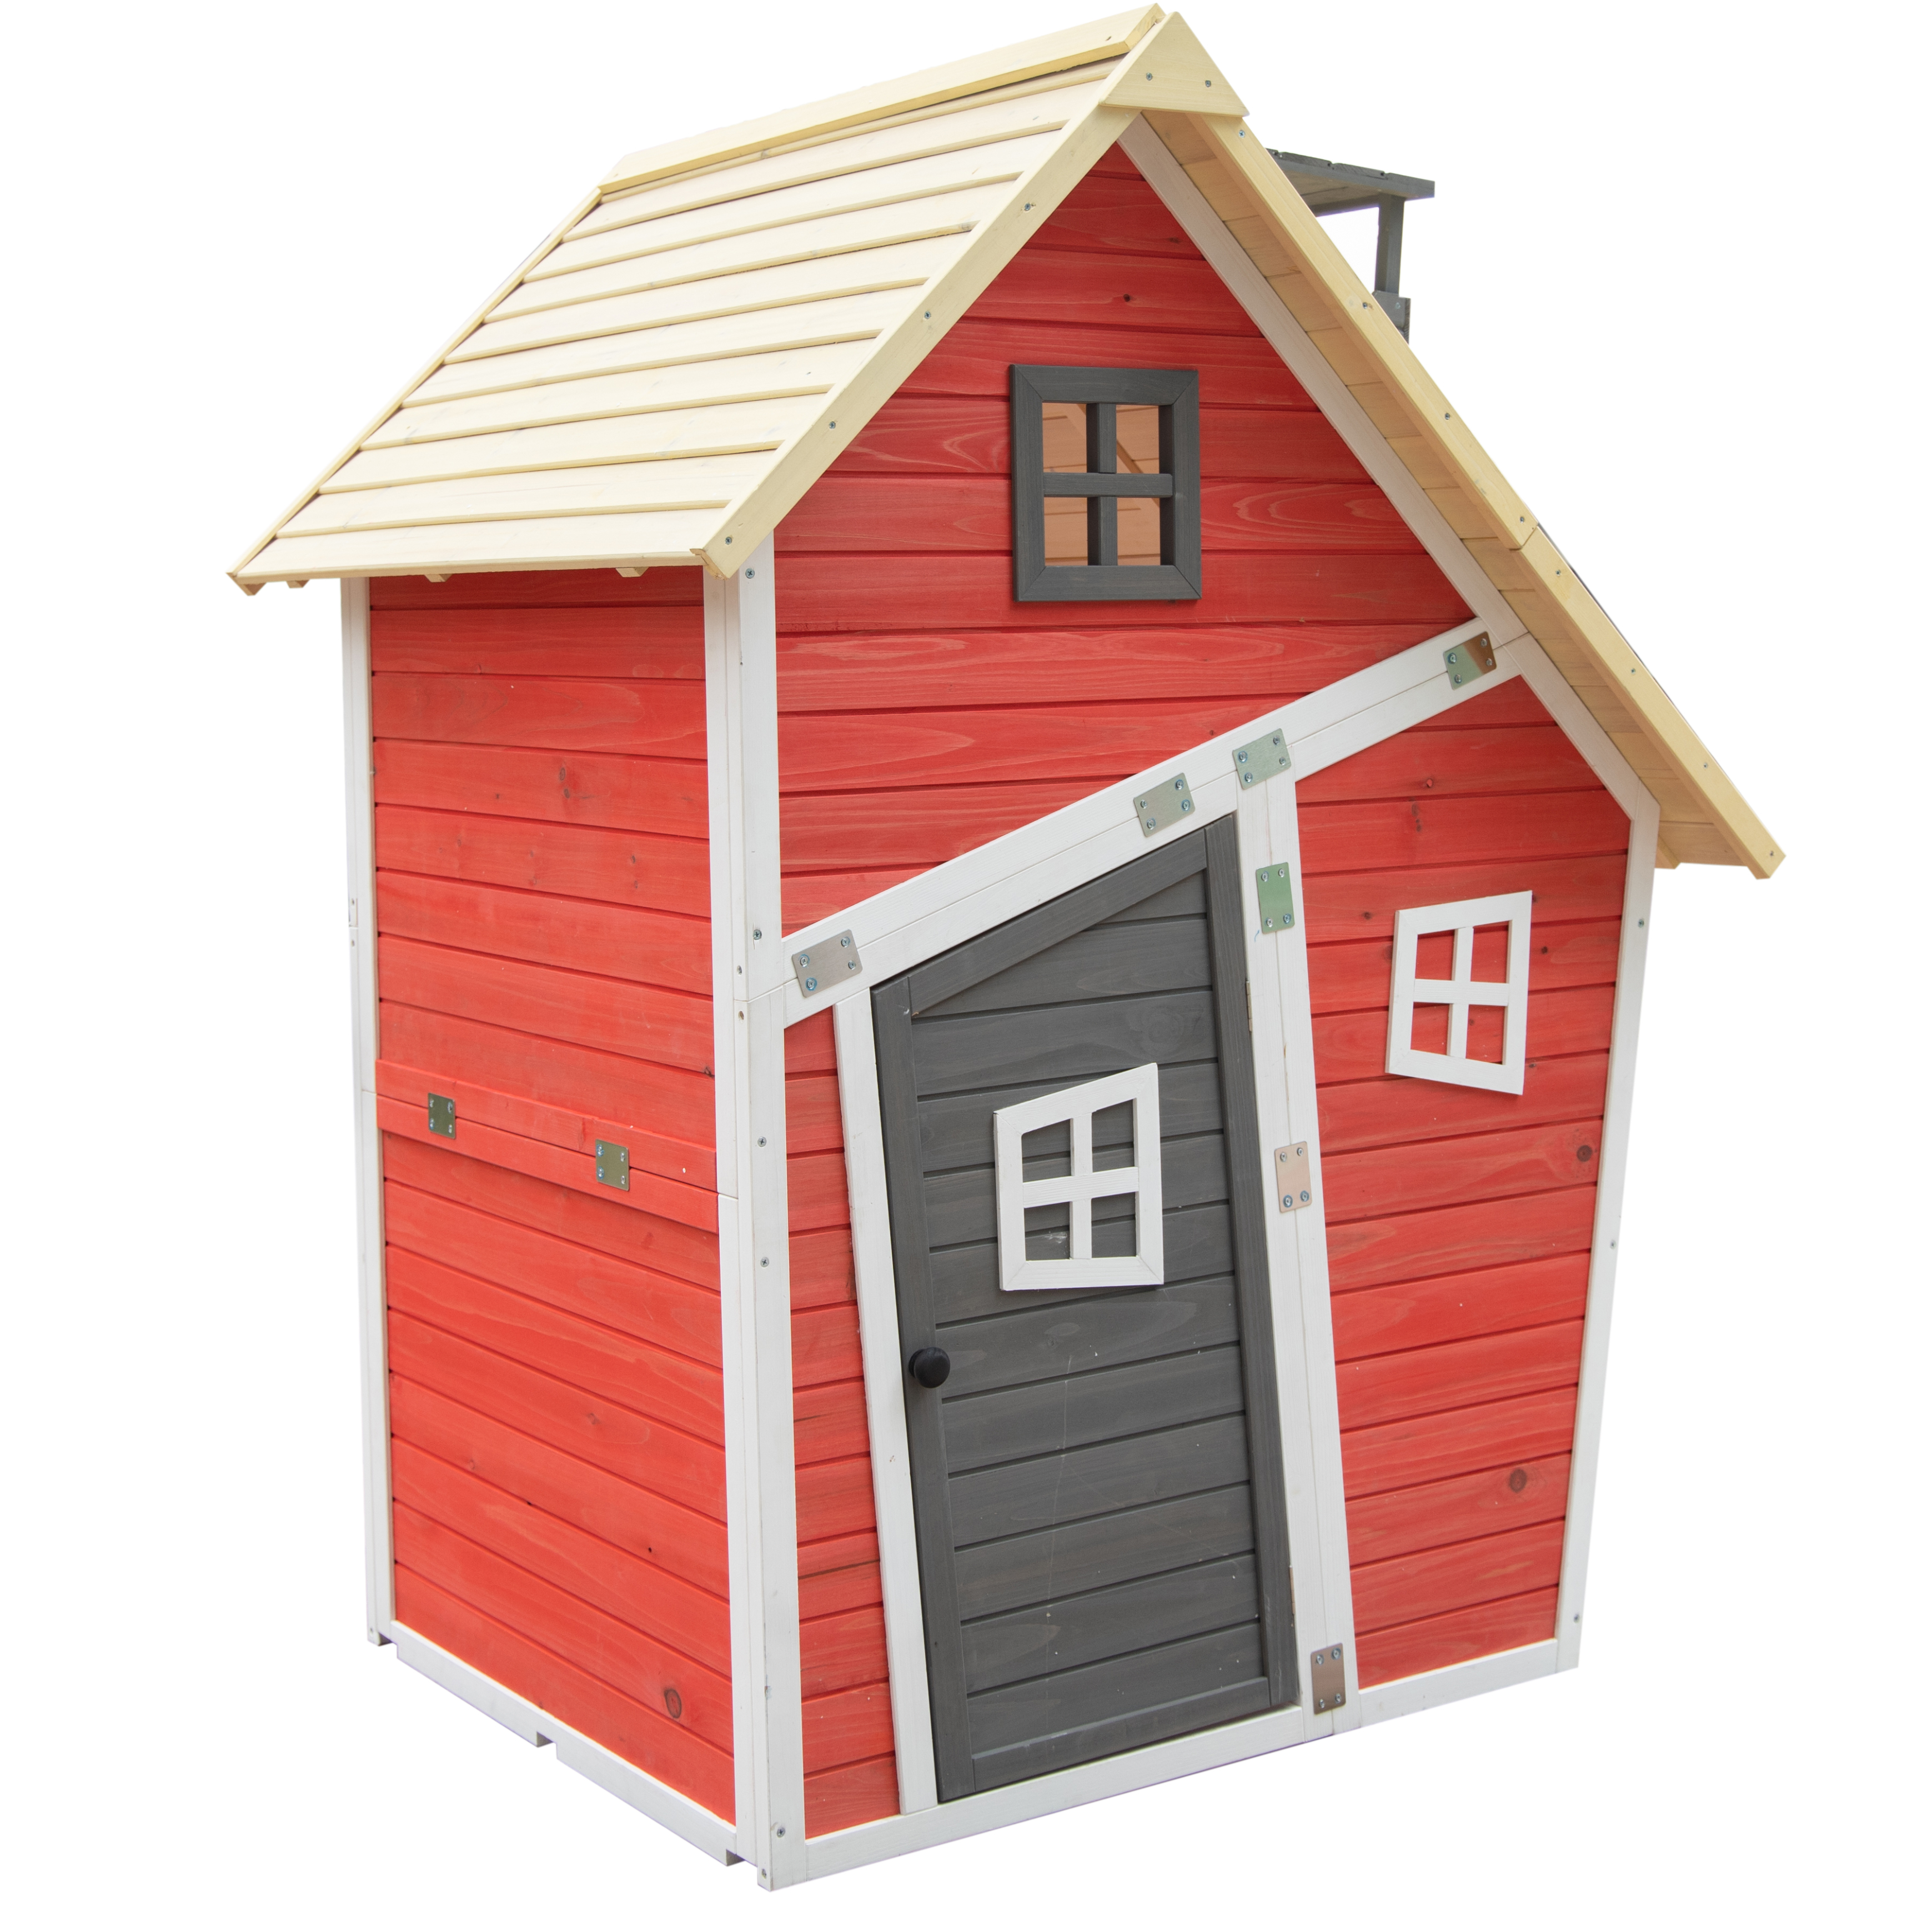 fabrica personalizată ieftină curte cu ridicata wendy copii copii roșu albastru verde lemn promoție casă de joacă